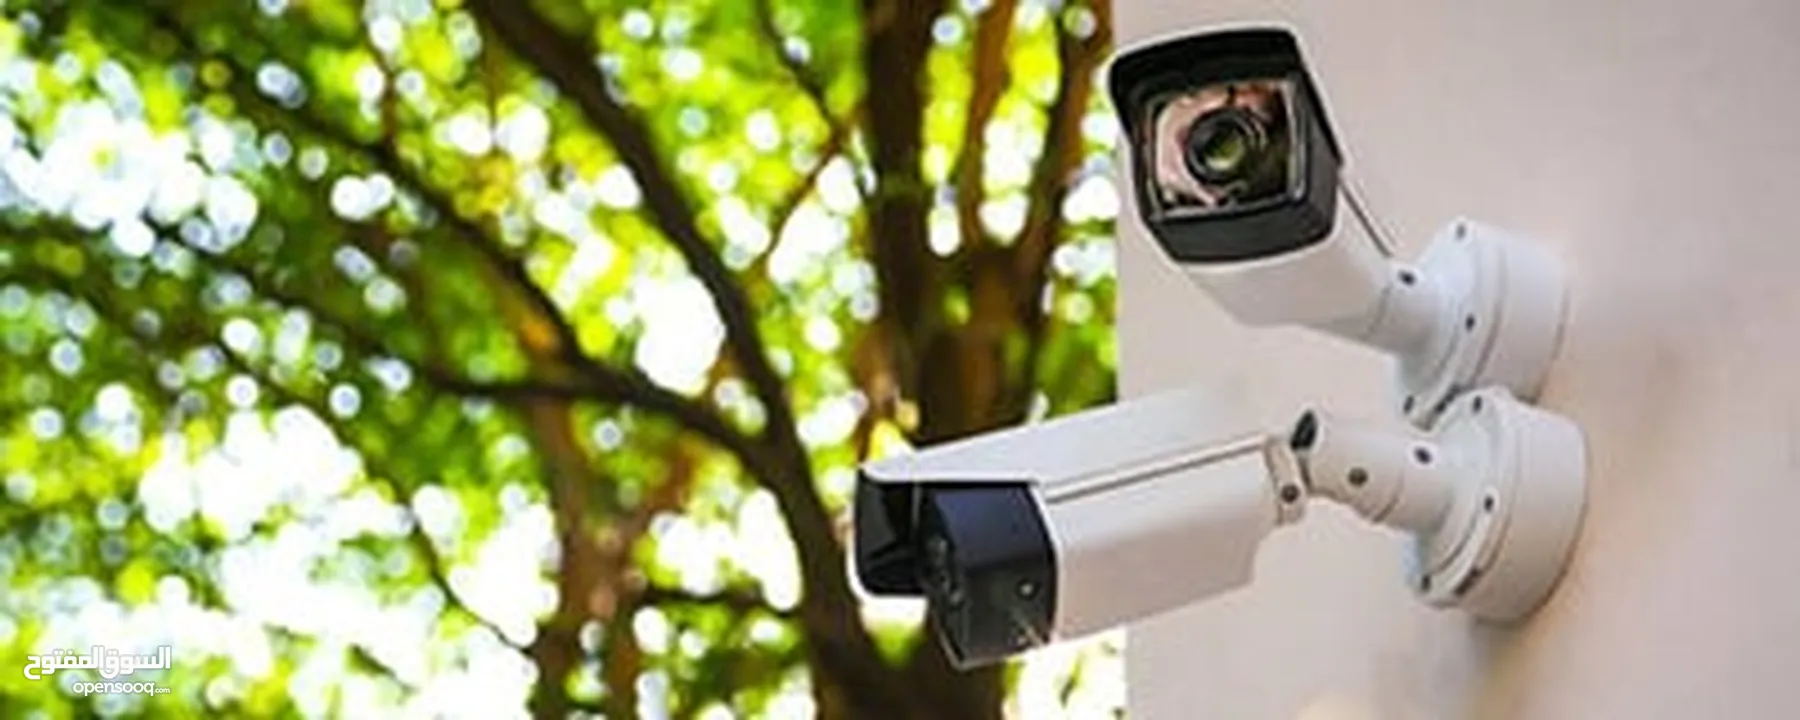 نظام كاميرات مراقبه للمحلات والمستودعات والهناجر والمنازل